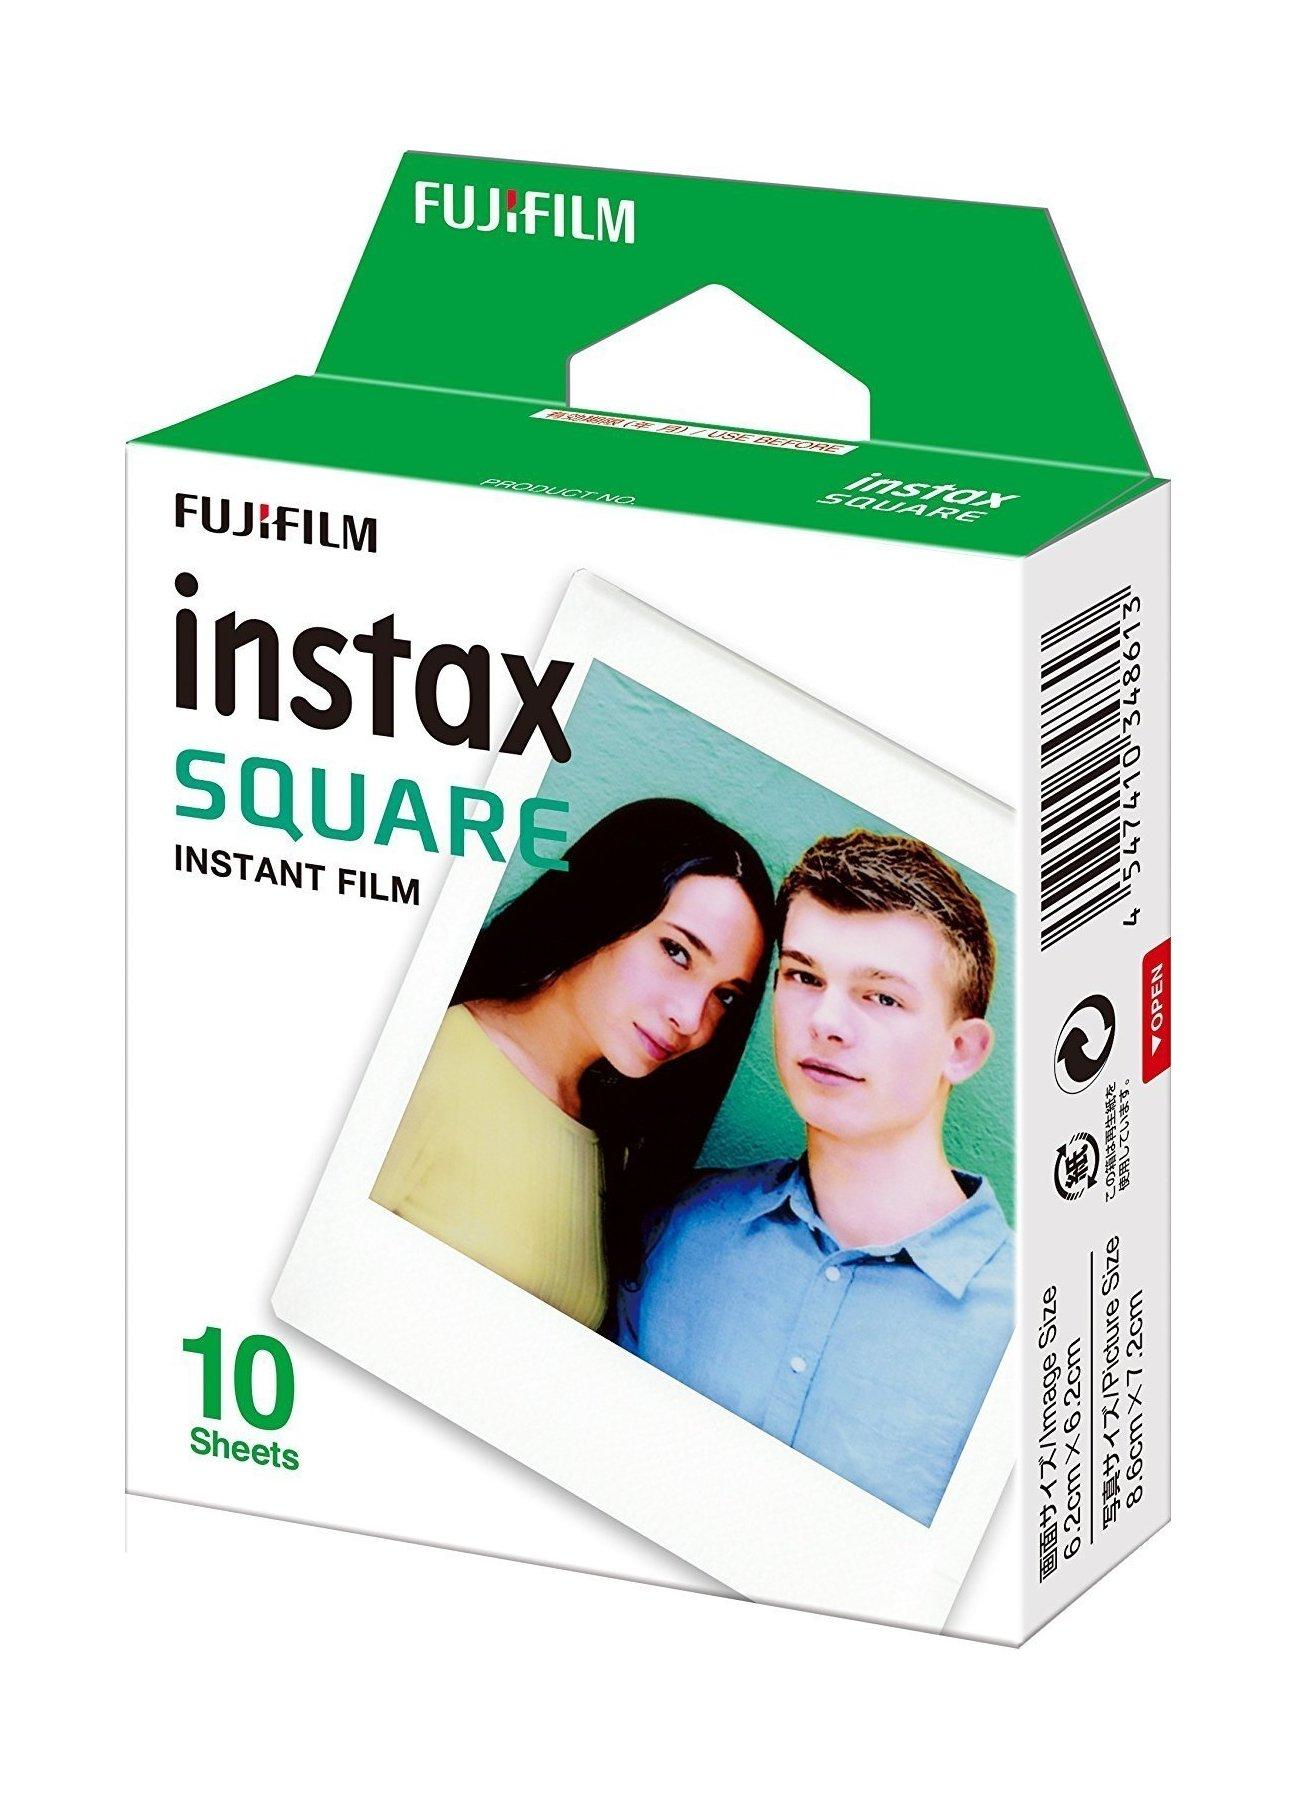 Buy Fujifilm instax square instant film - 10 exposures in Kuwait